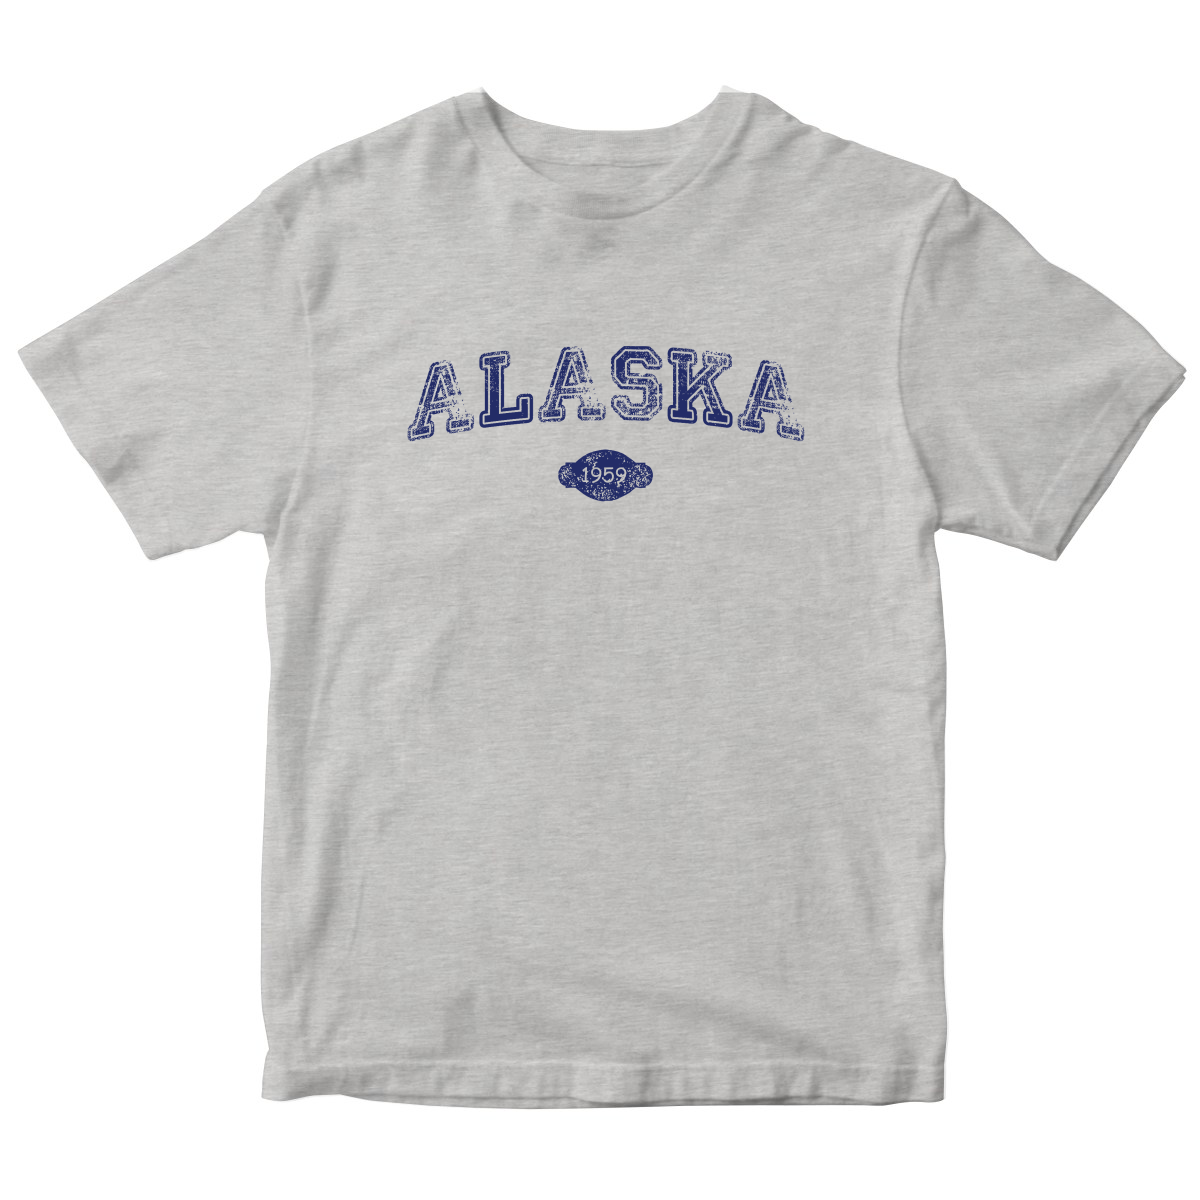 Alaska 1959 Kids T-shirt